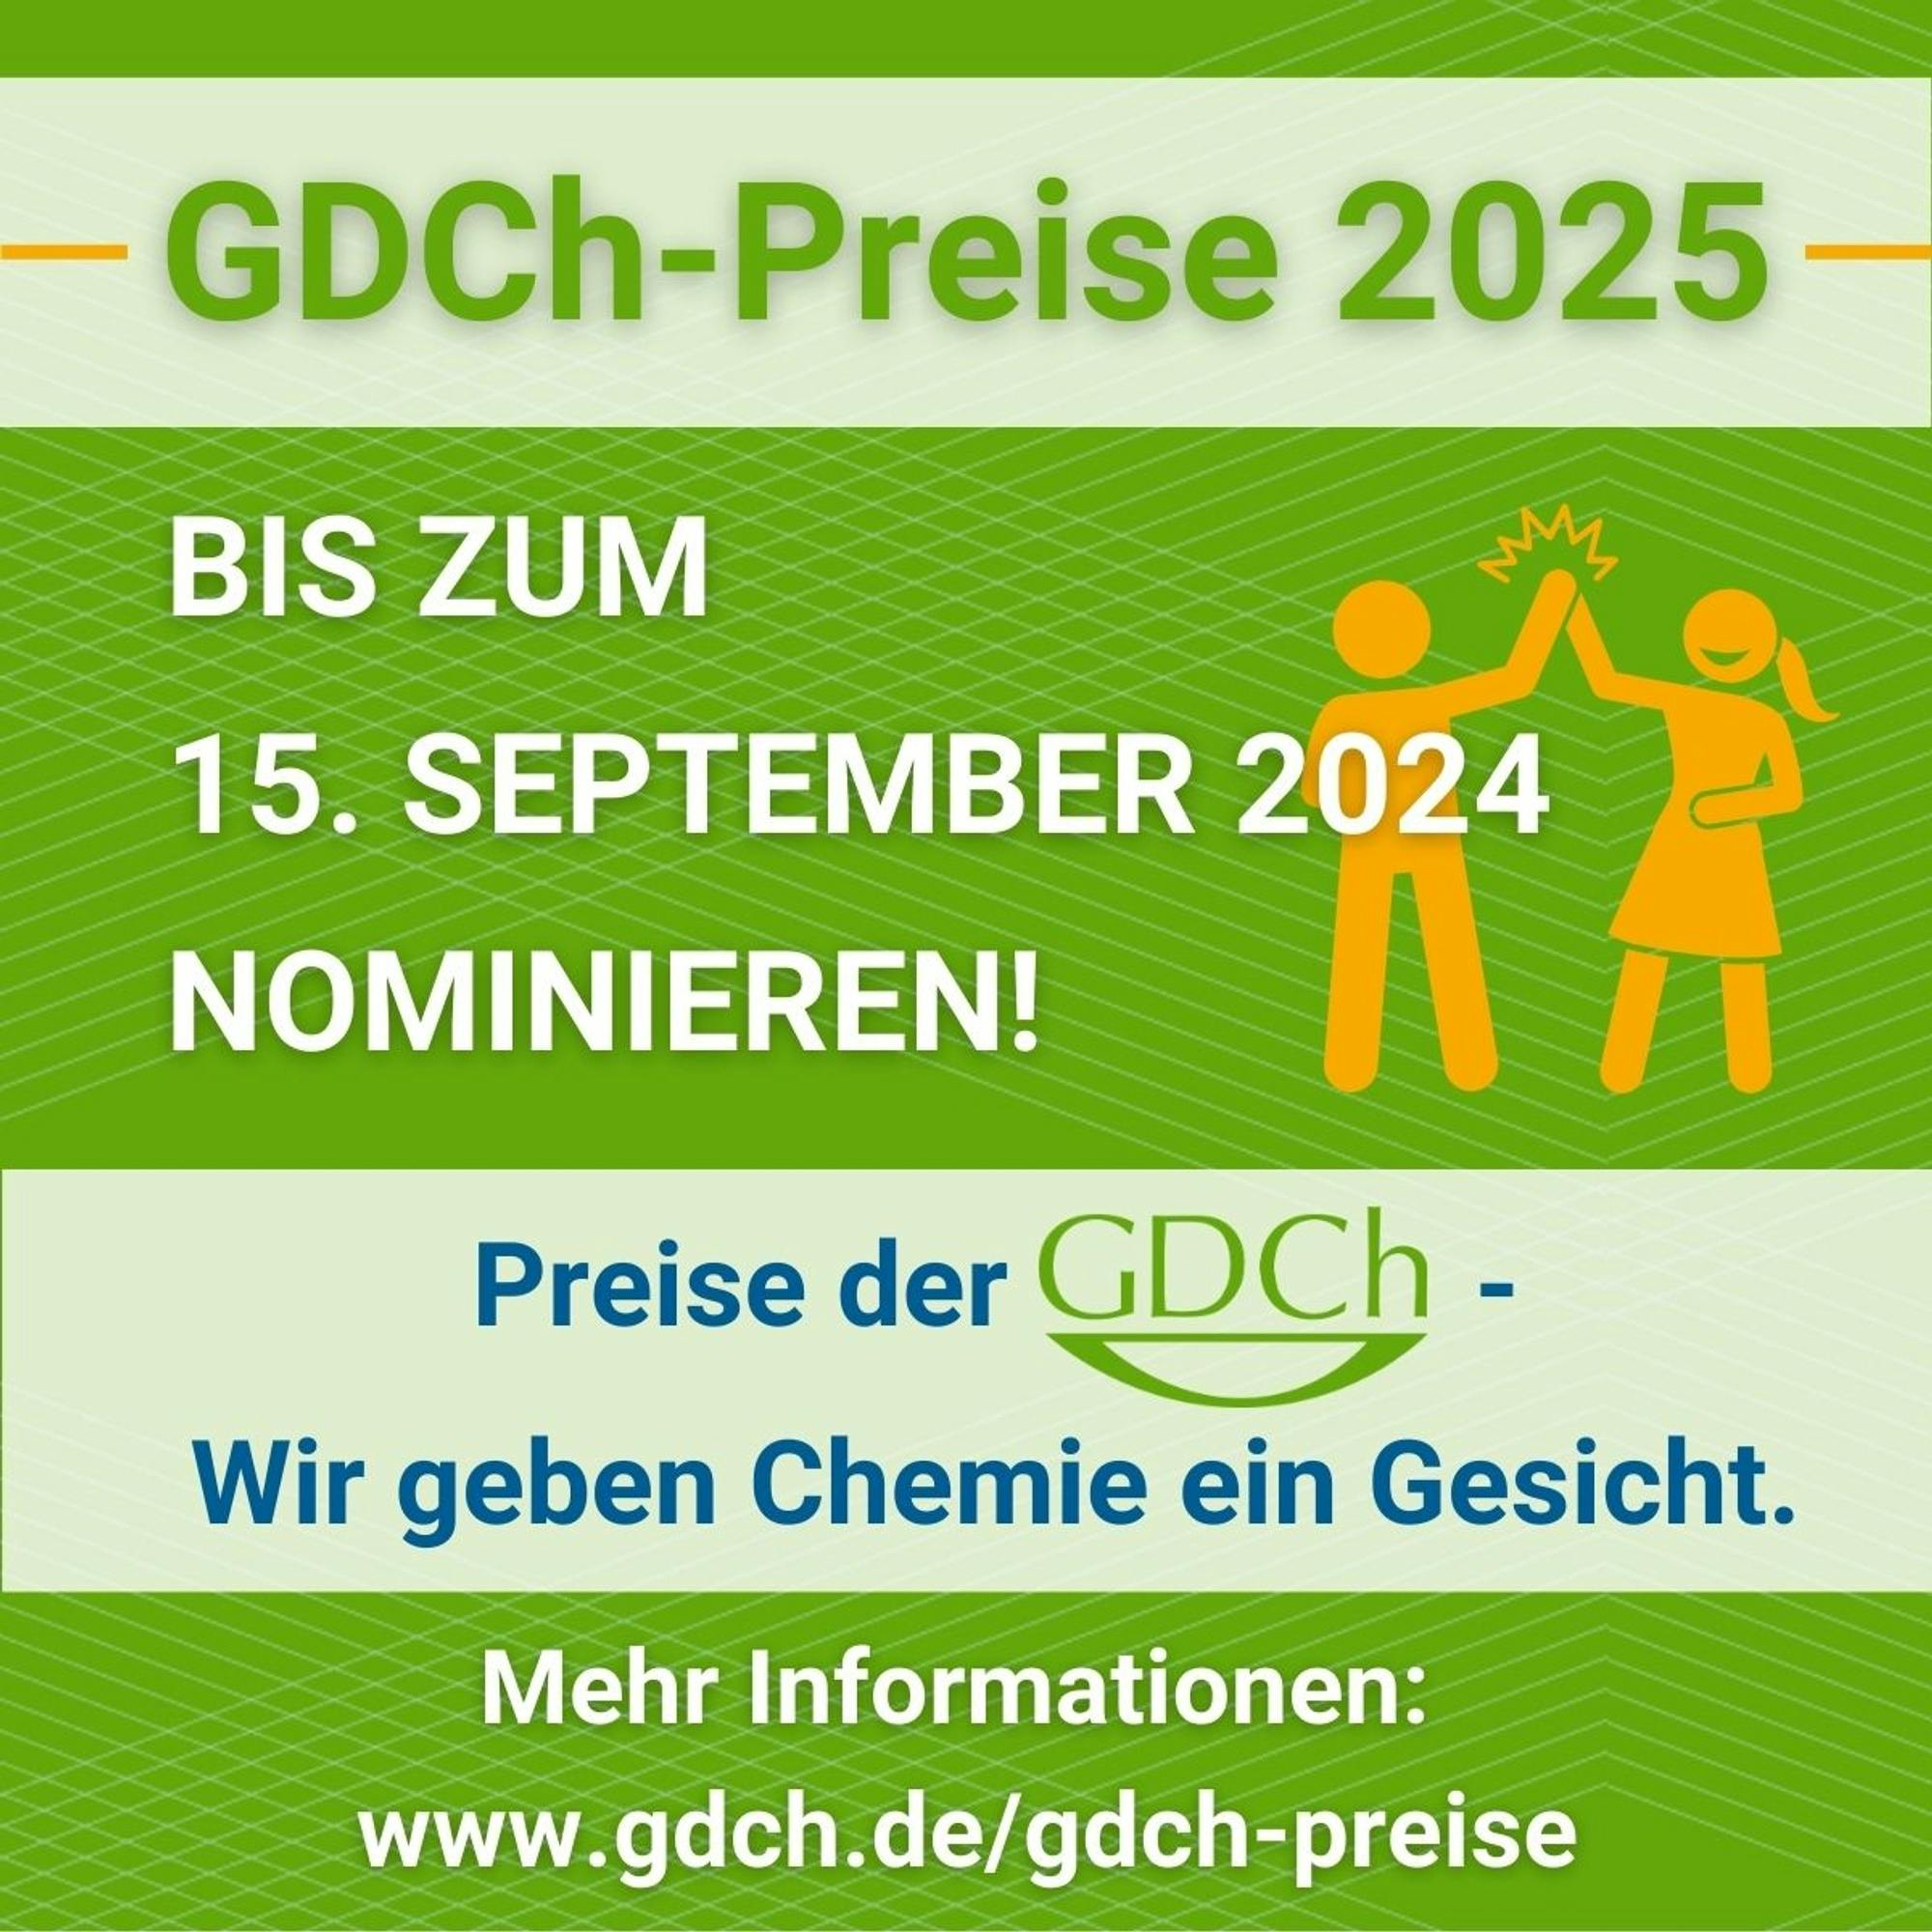 GDCh-Preise 2025 sind ausgeschrieben